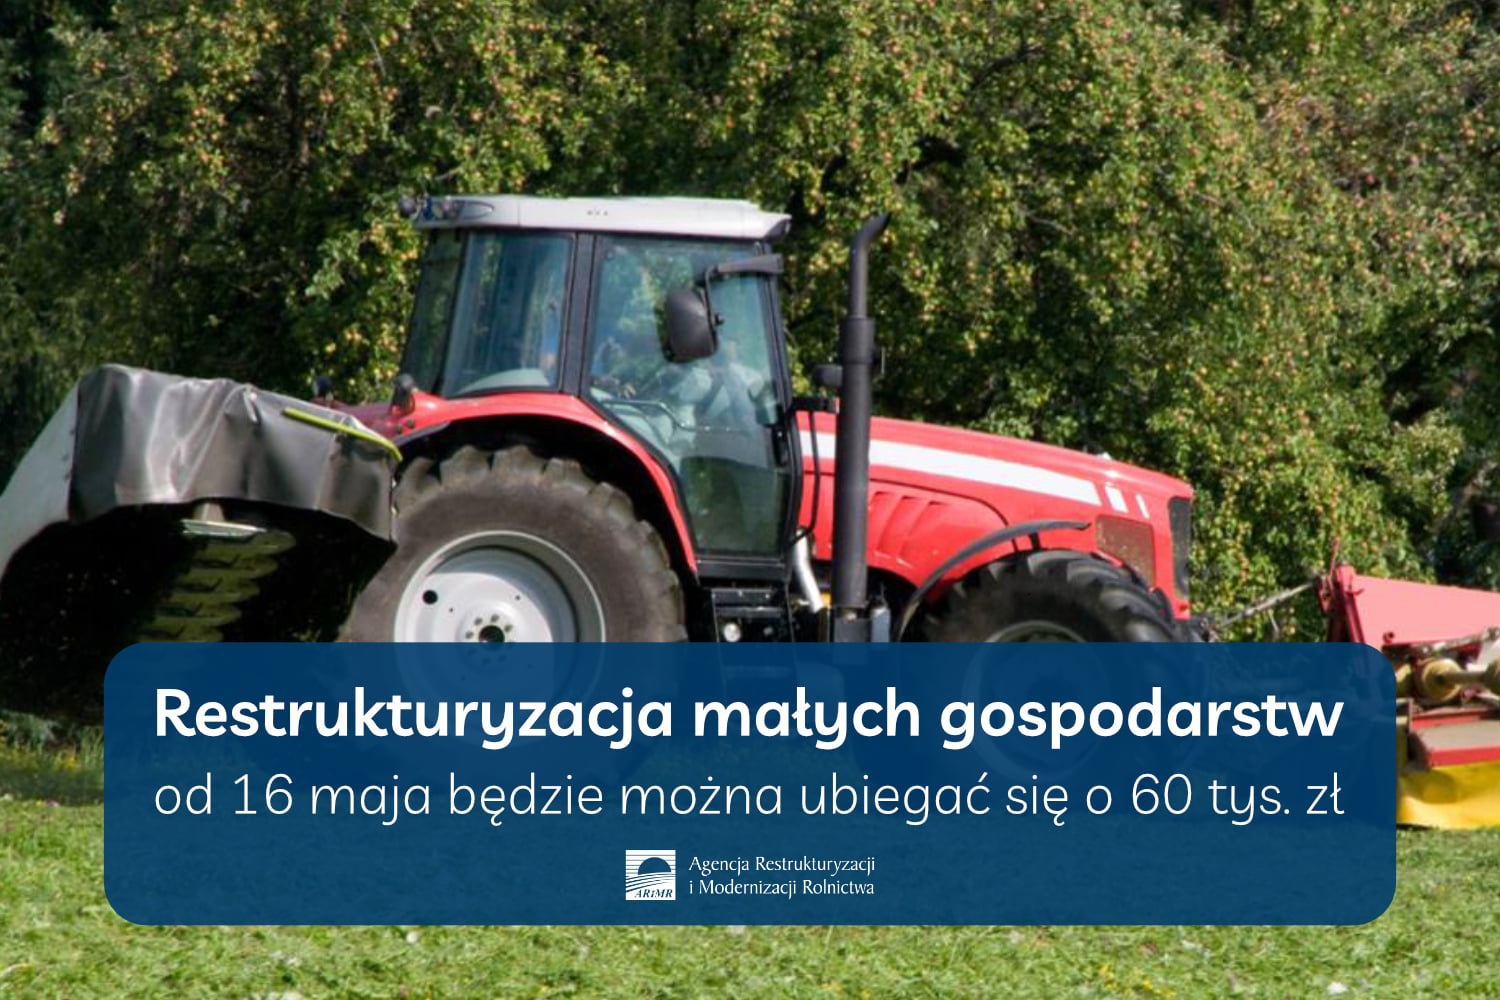 60 tys. zł na restrukturyzację małego gospodarstwa – ruszył nabór wniosków